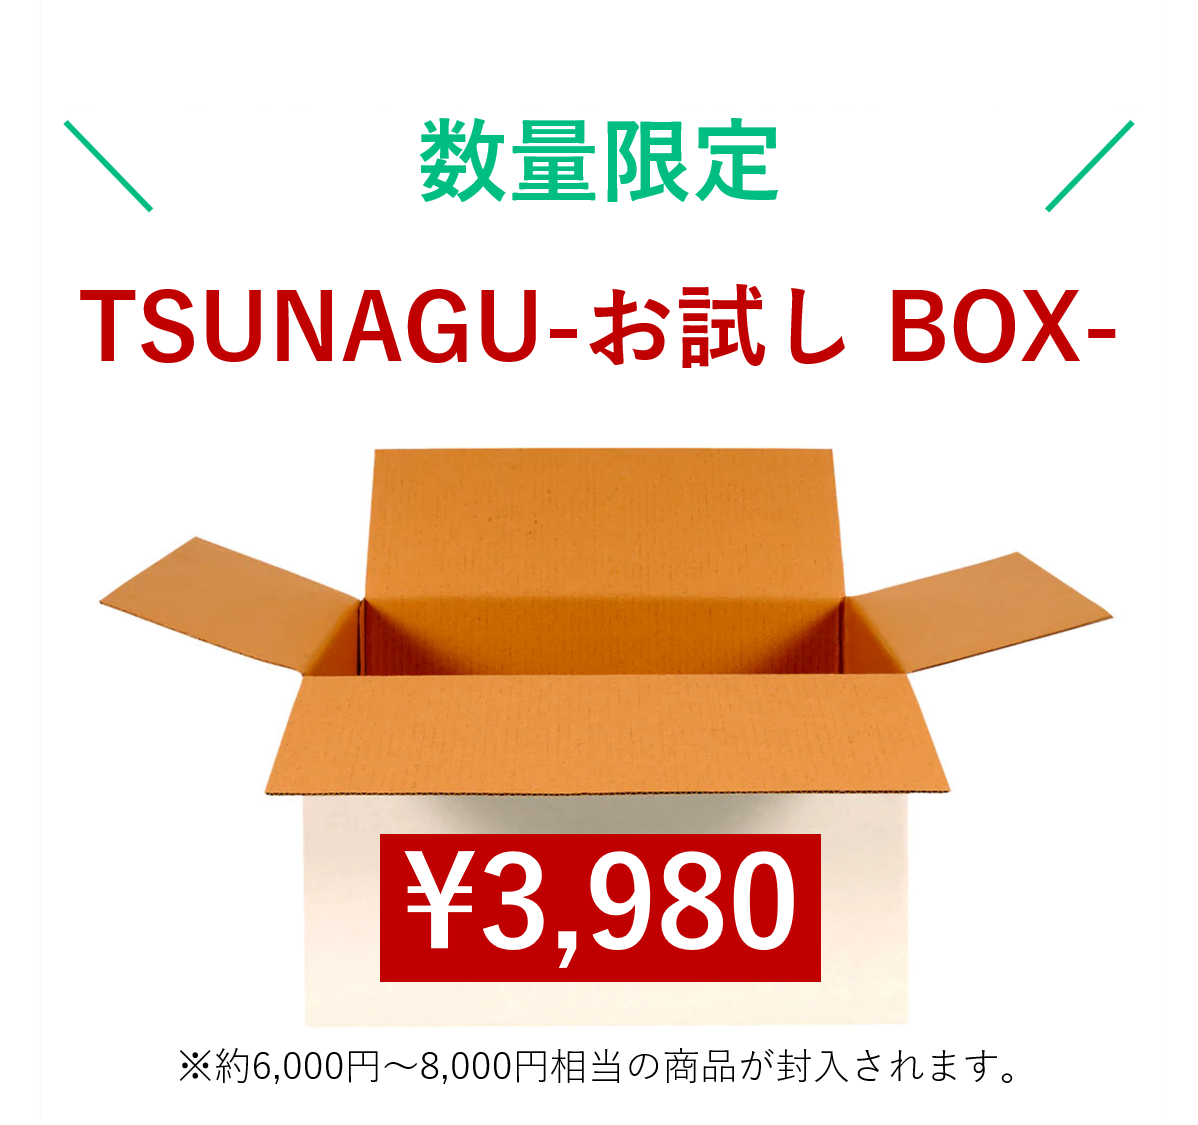 6月発送分！TSUNAGU-お試し BOX-